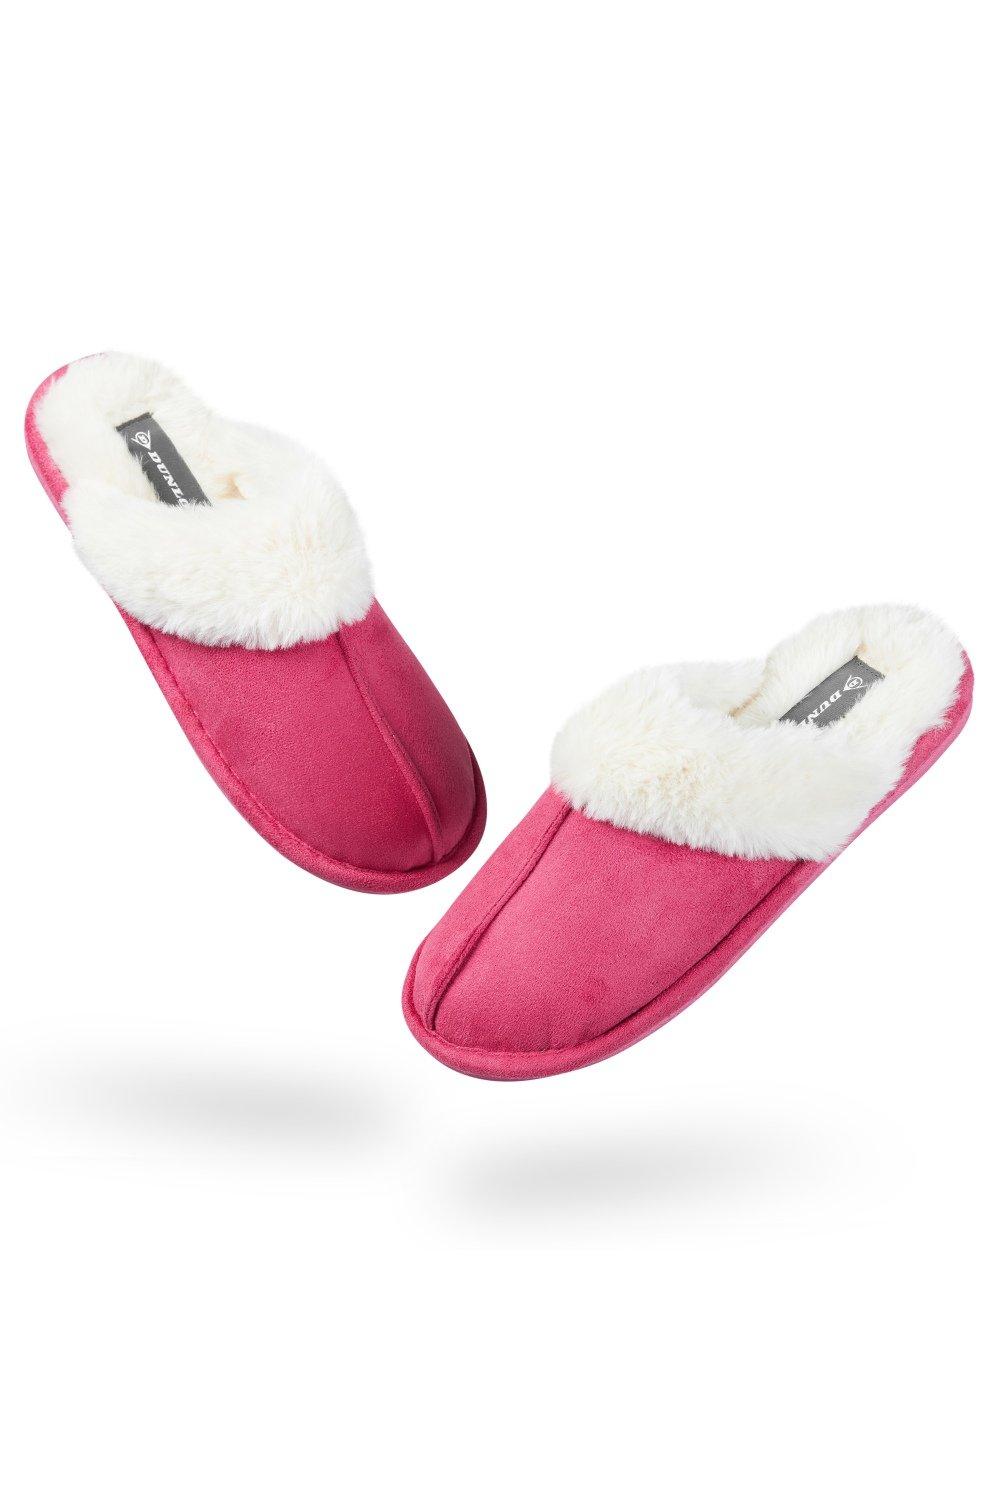 Домашние пушистые тапочки на толстой меховой подкладке Dunlop, розовый slides women sandals fur slides for women flat slippers for women slipper women summer slipper slippers women slippers